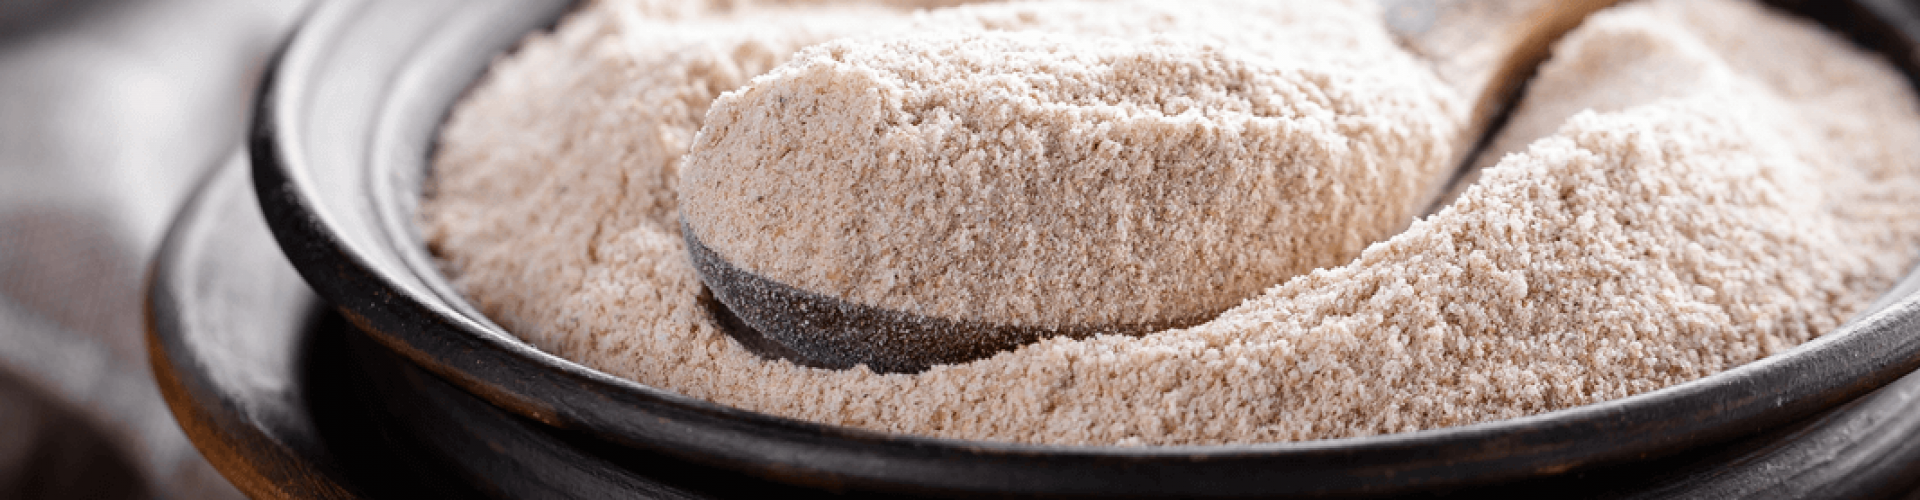 Chiscioi con farina di grano saraceno